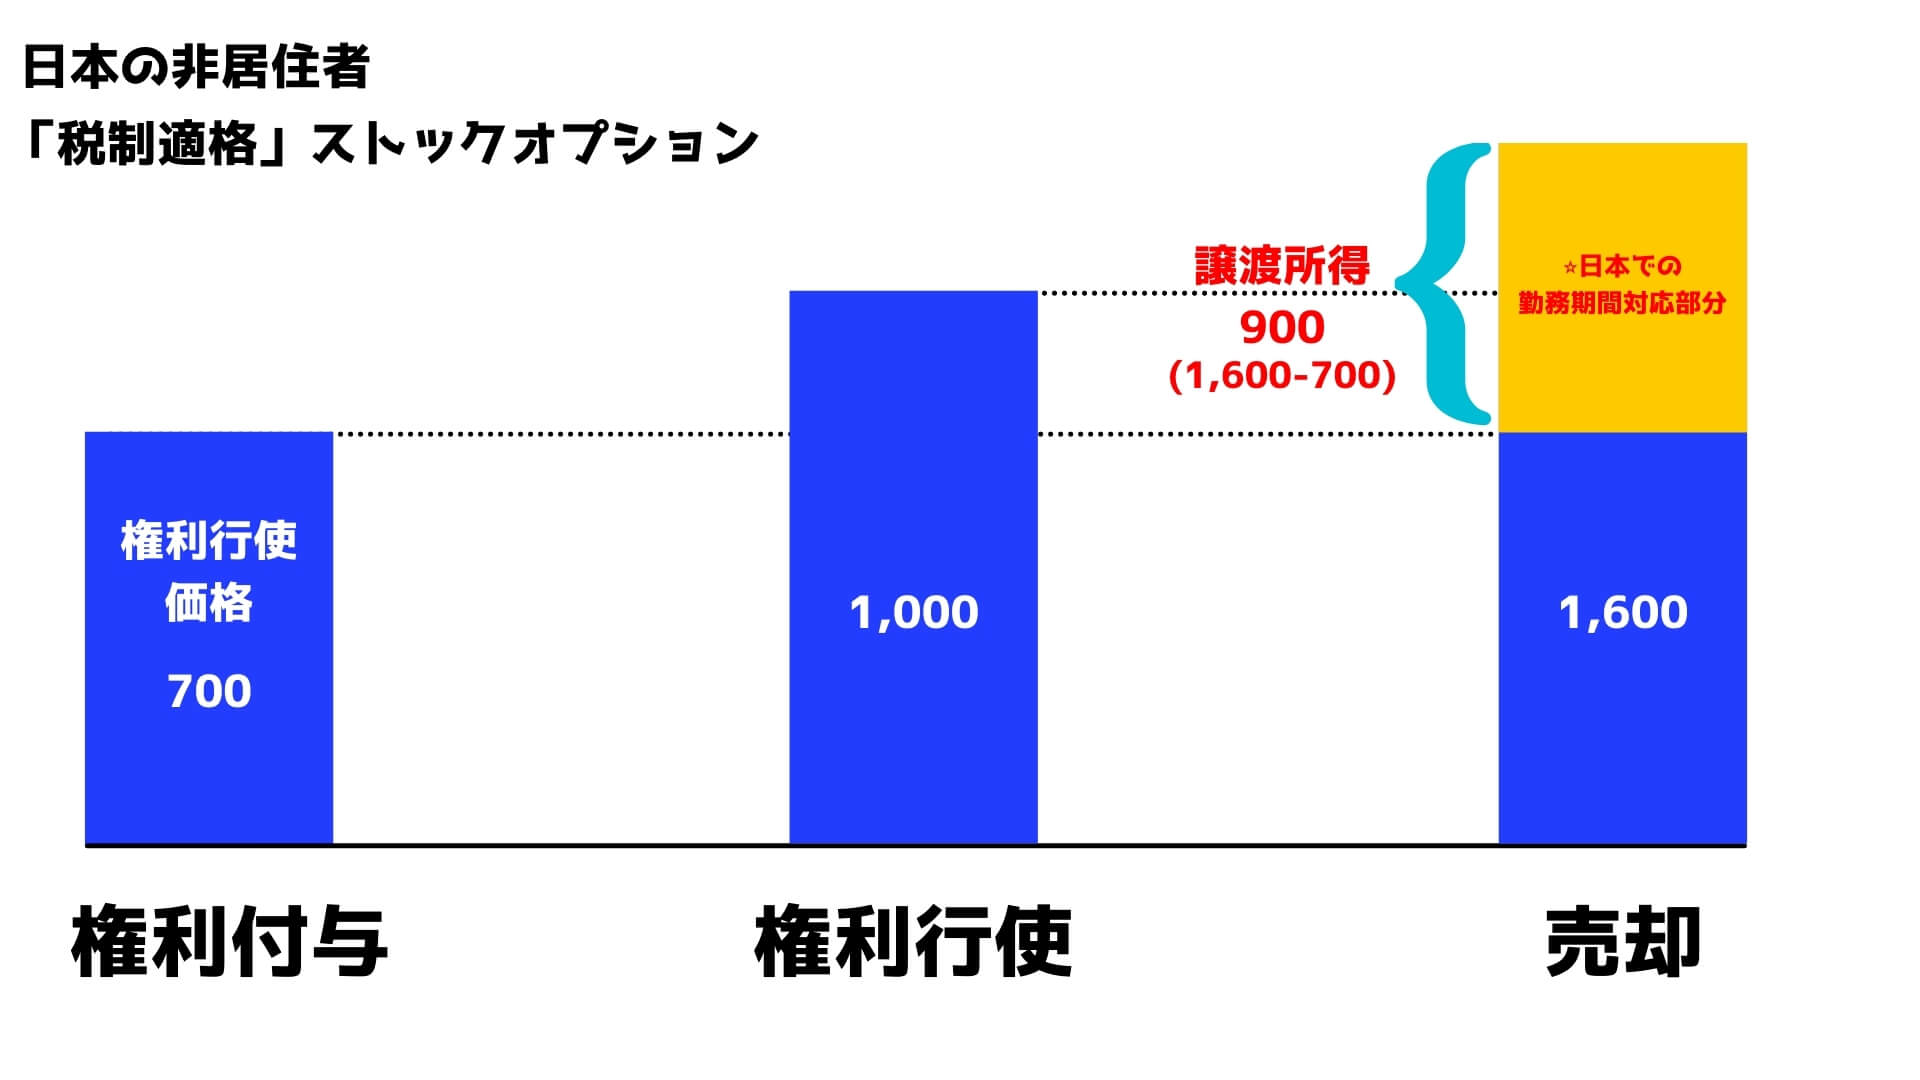 海外出向中で日本非居住者がストックオプションを行使・売却した場合の税務上の取り扱い【図解】 Manabox